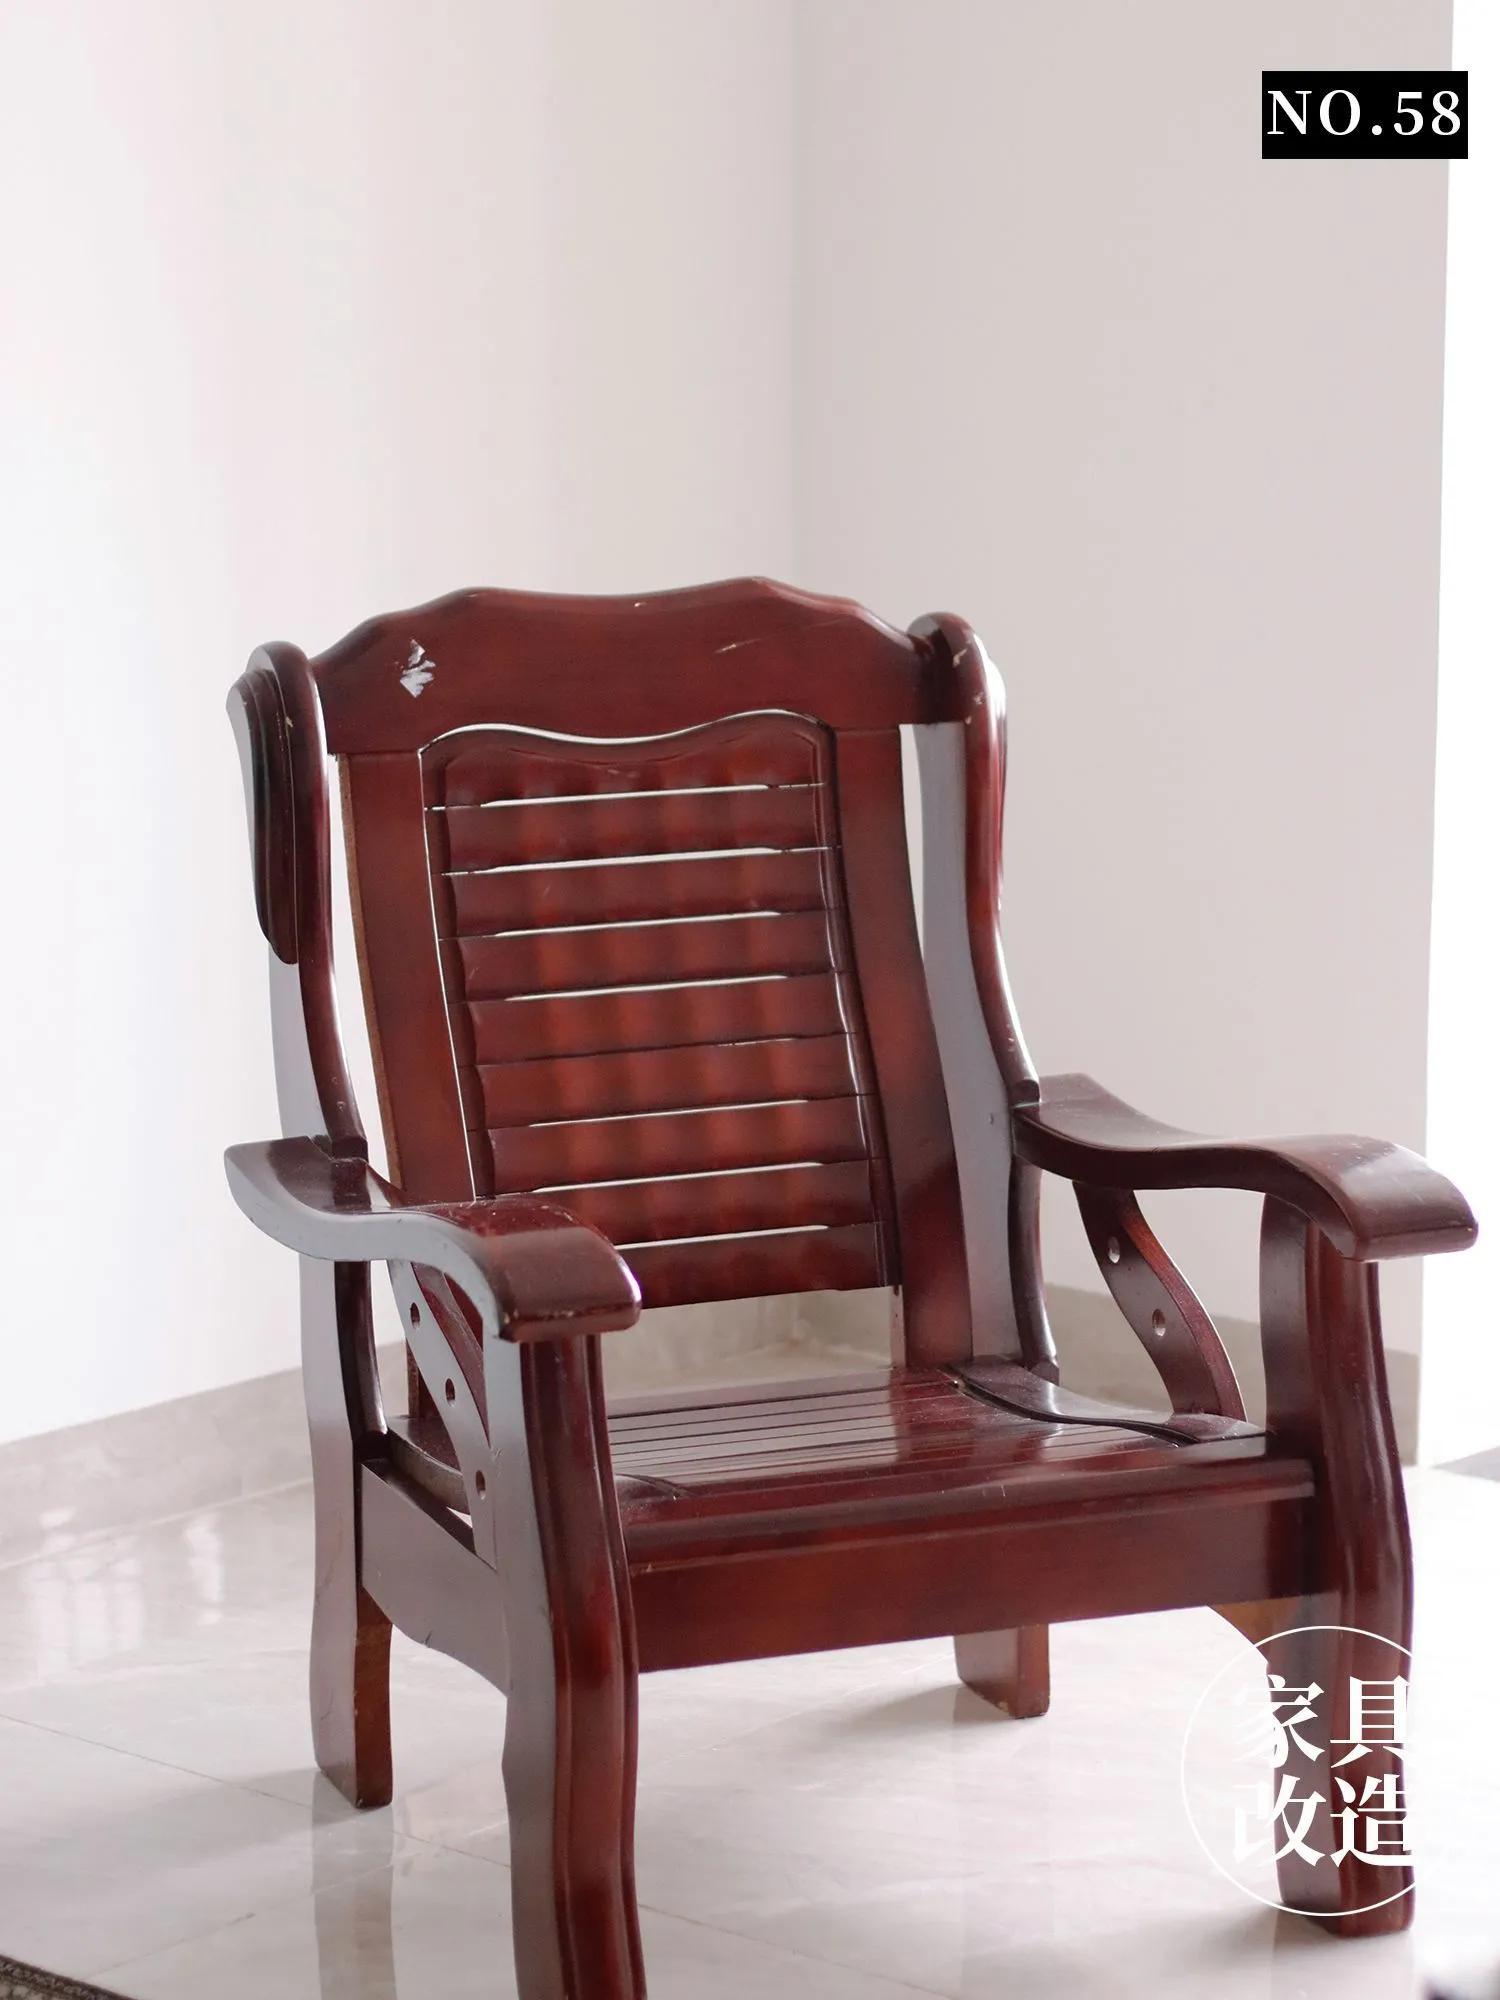 很多人家里都有这样的沙发椅，实用但样式比较老式，扔了又可惜，不如改造一下吧~———.✎材料清单.水性木器漆-酱紫色/0.5kg复古布料/合适尺寸———.✎改造流程.❶）把旧椅子整体